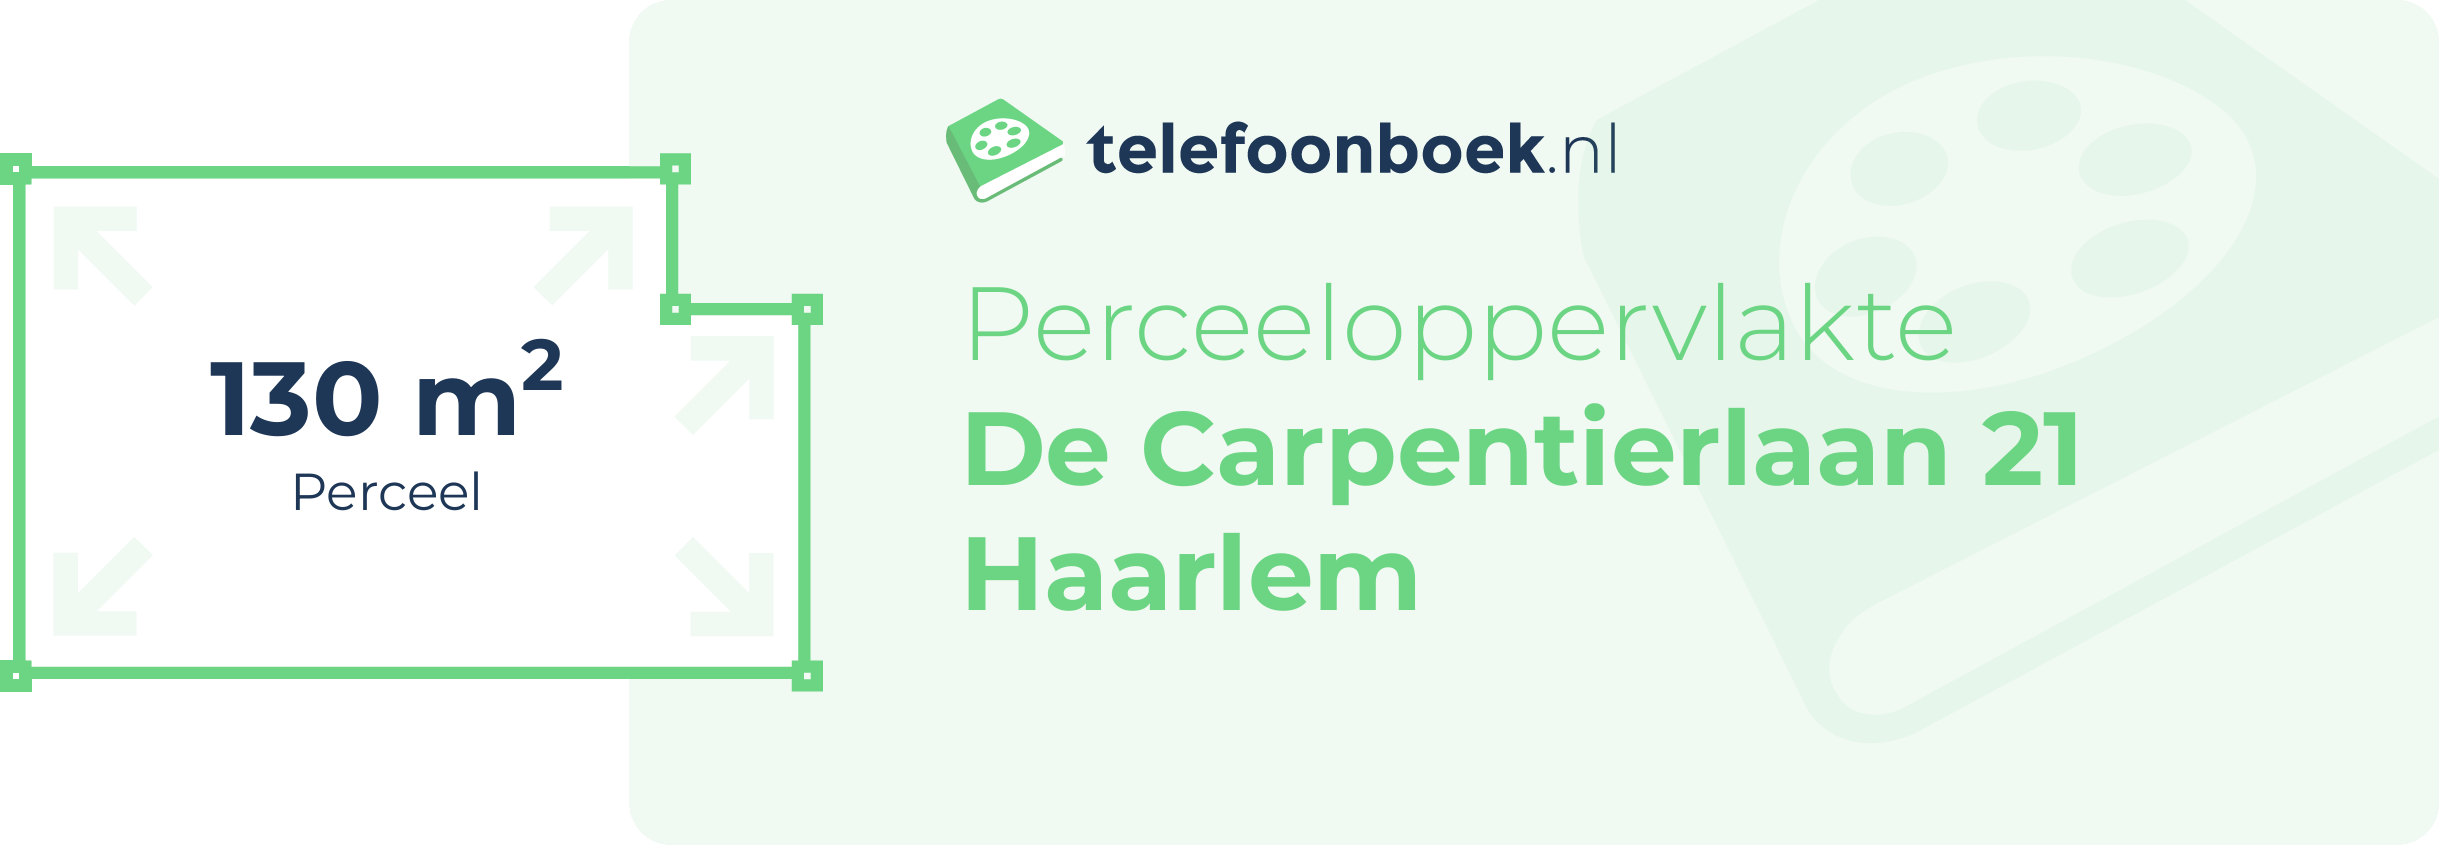 Perceeloppervlakte De Carpentierlaan 21 Haarlem